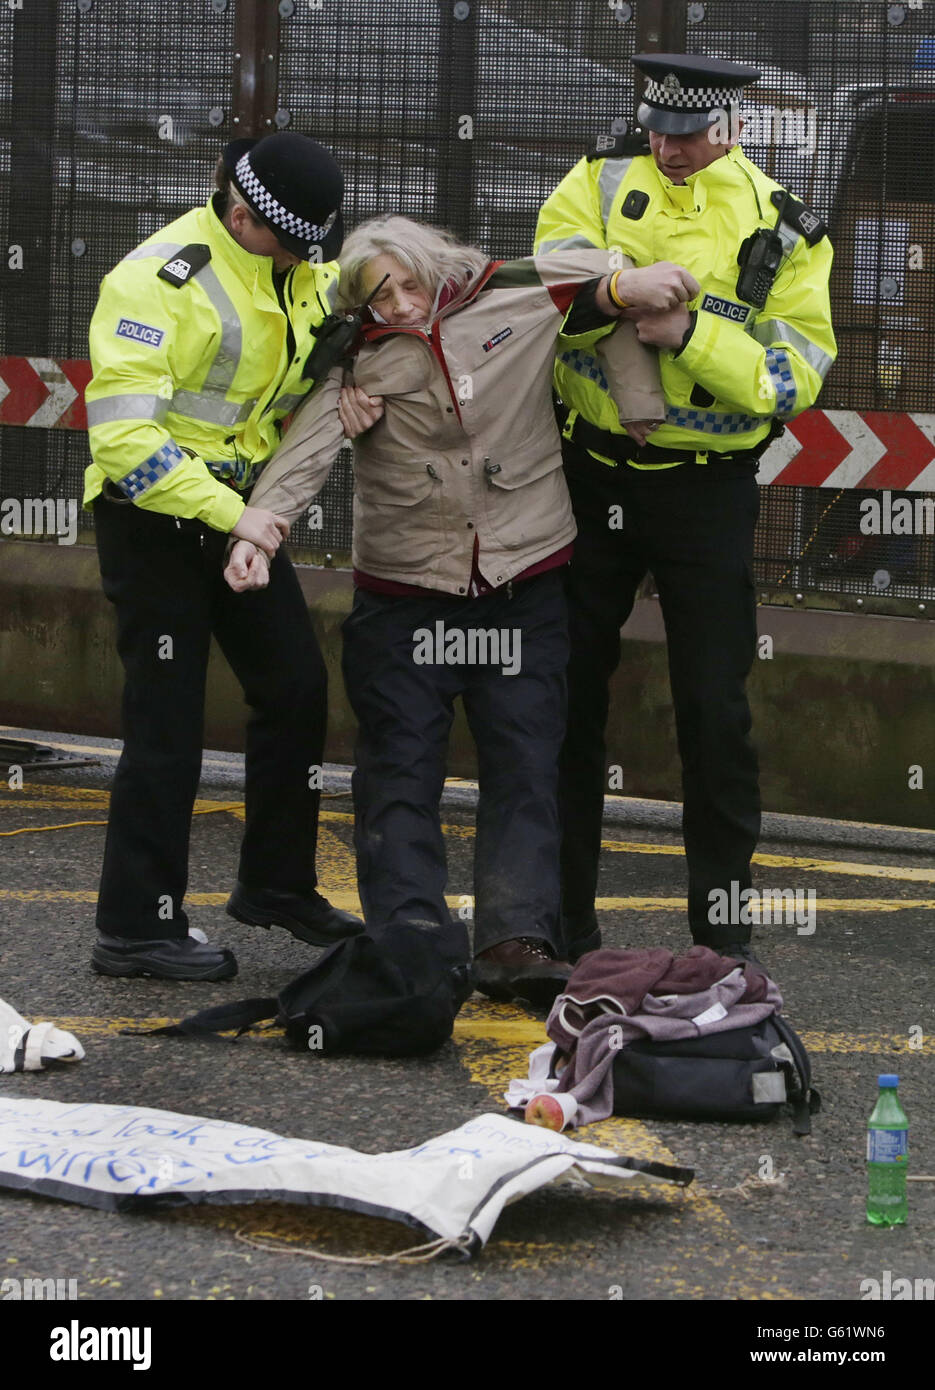 Les manifestants sont déplacés par la police à un blocus à l'extérieur de la base navale de Faslane en Écosse lors d'une manifestation anti Trident. Banque D'Images